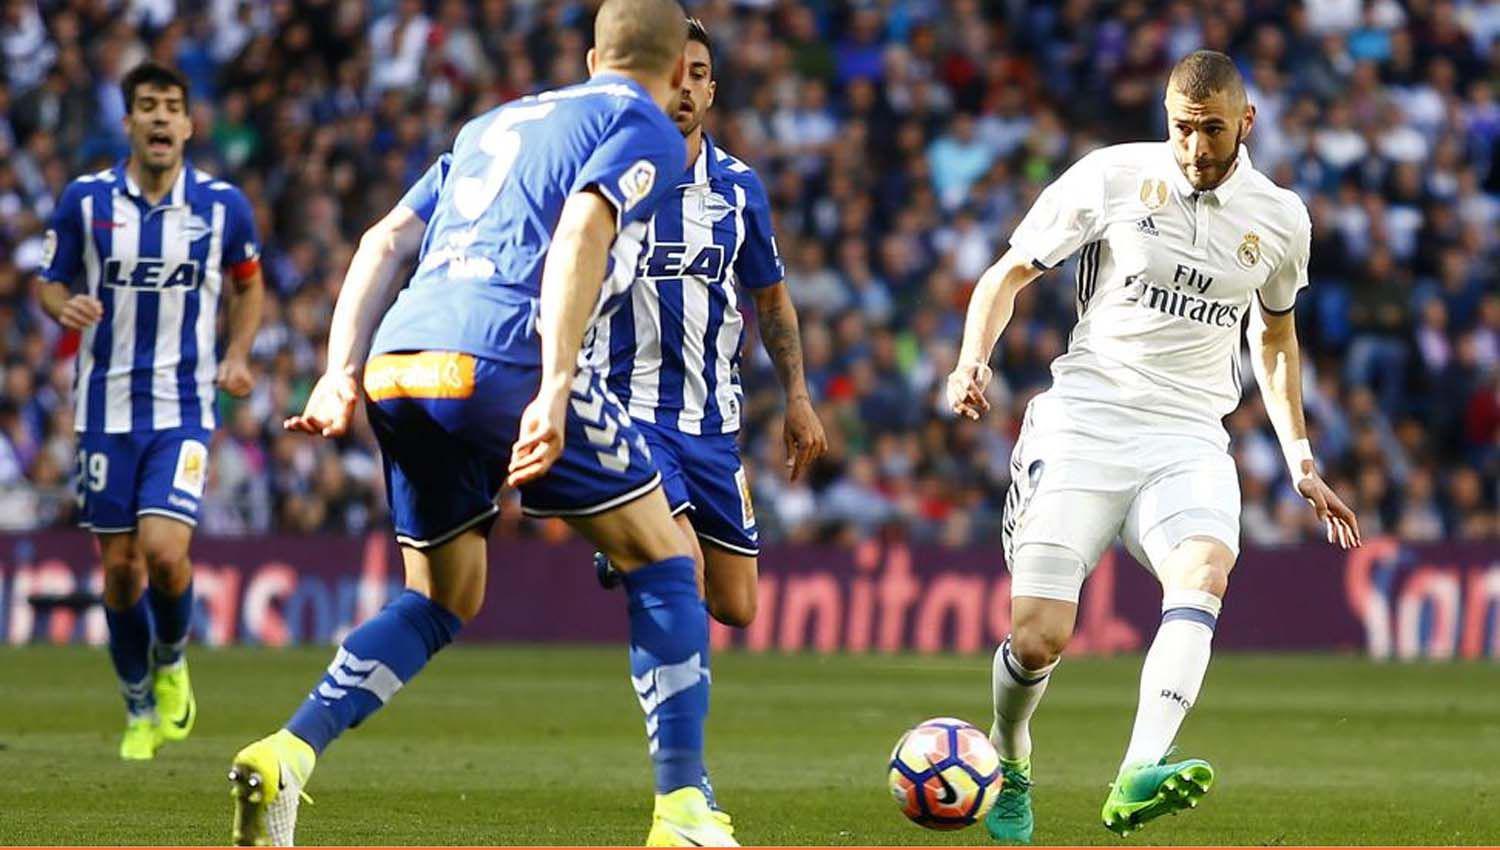 El liacuteder Real Madrid visita al Alaveacutes en el cierre de la fecha en Espantildea